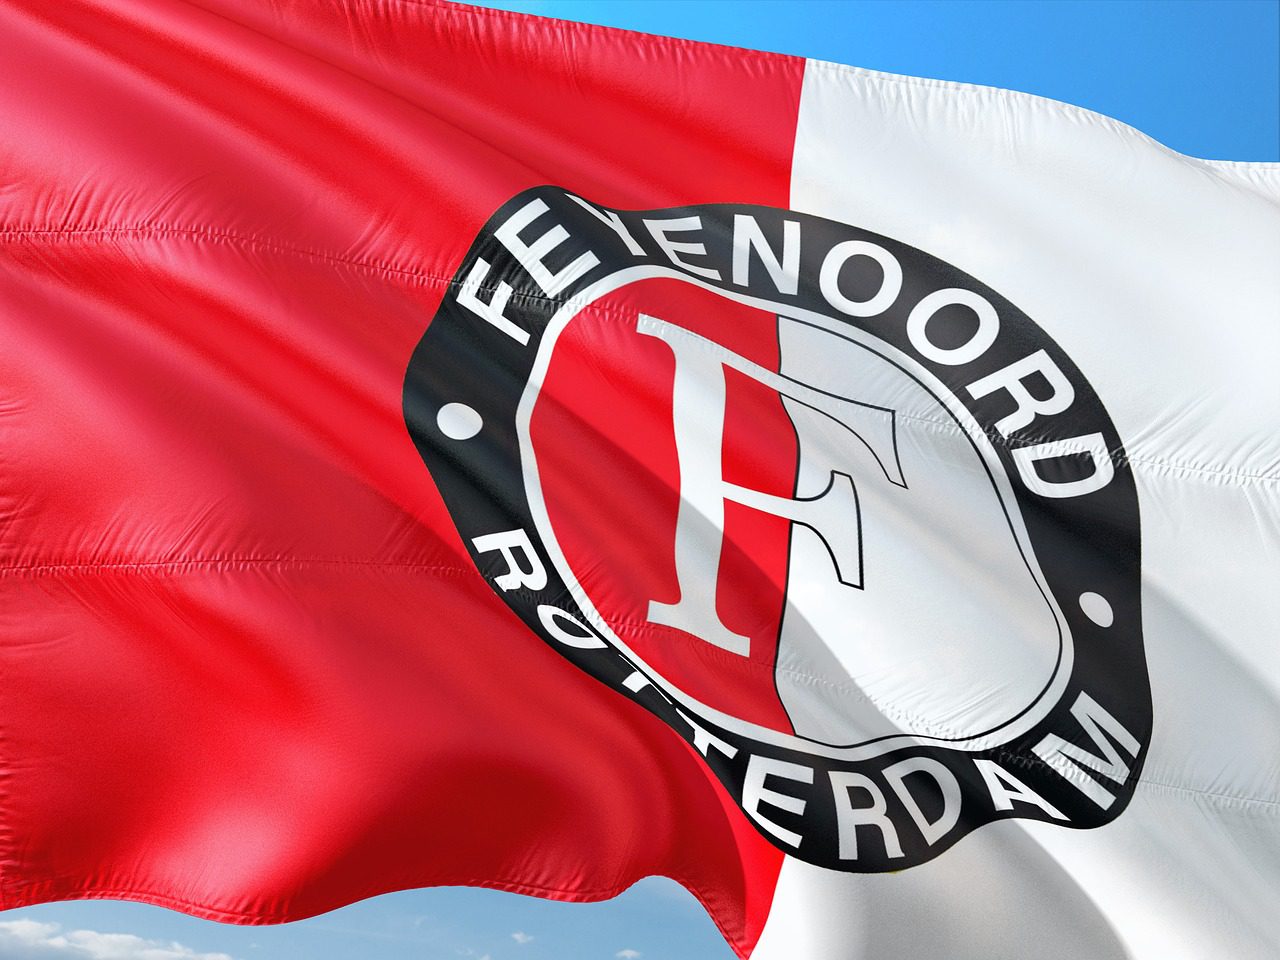 Haalt Feyenoord dinsdag de eerste punten in de Champions League?